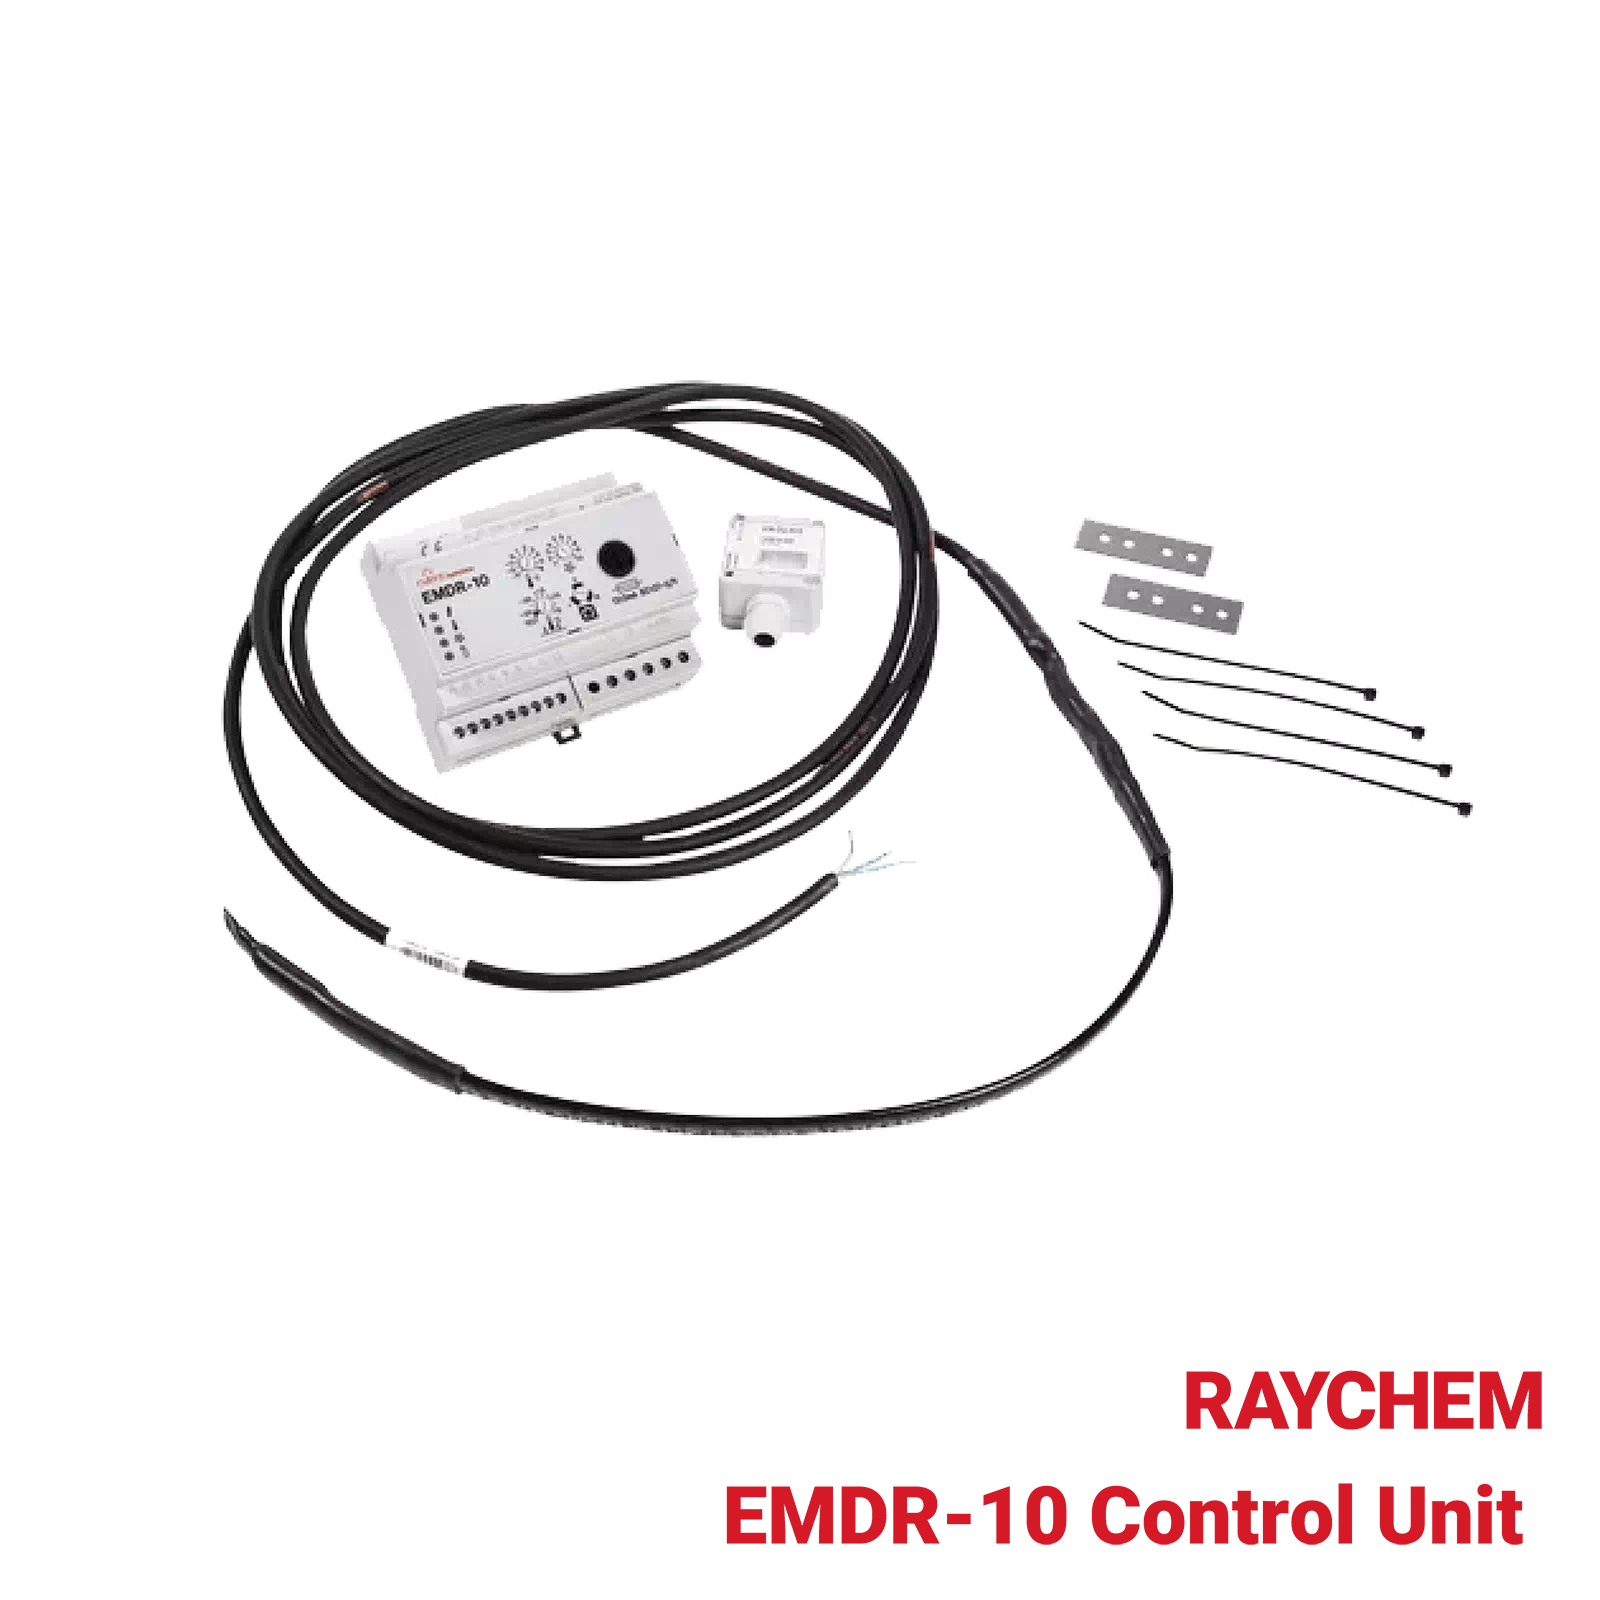 EMDR-10-Control-Unit-Raychem-Industrial-Heating